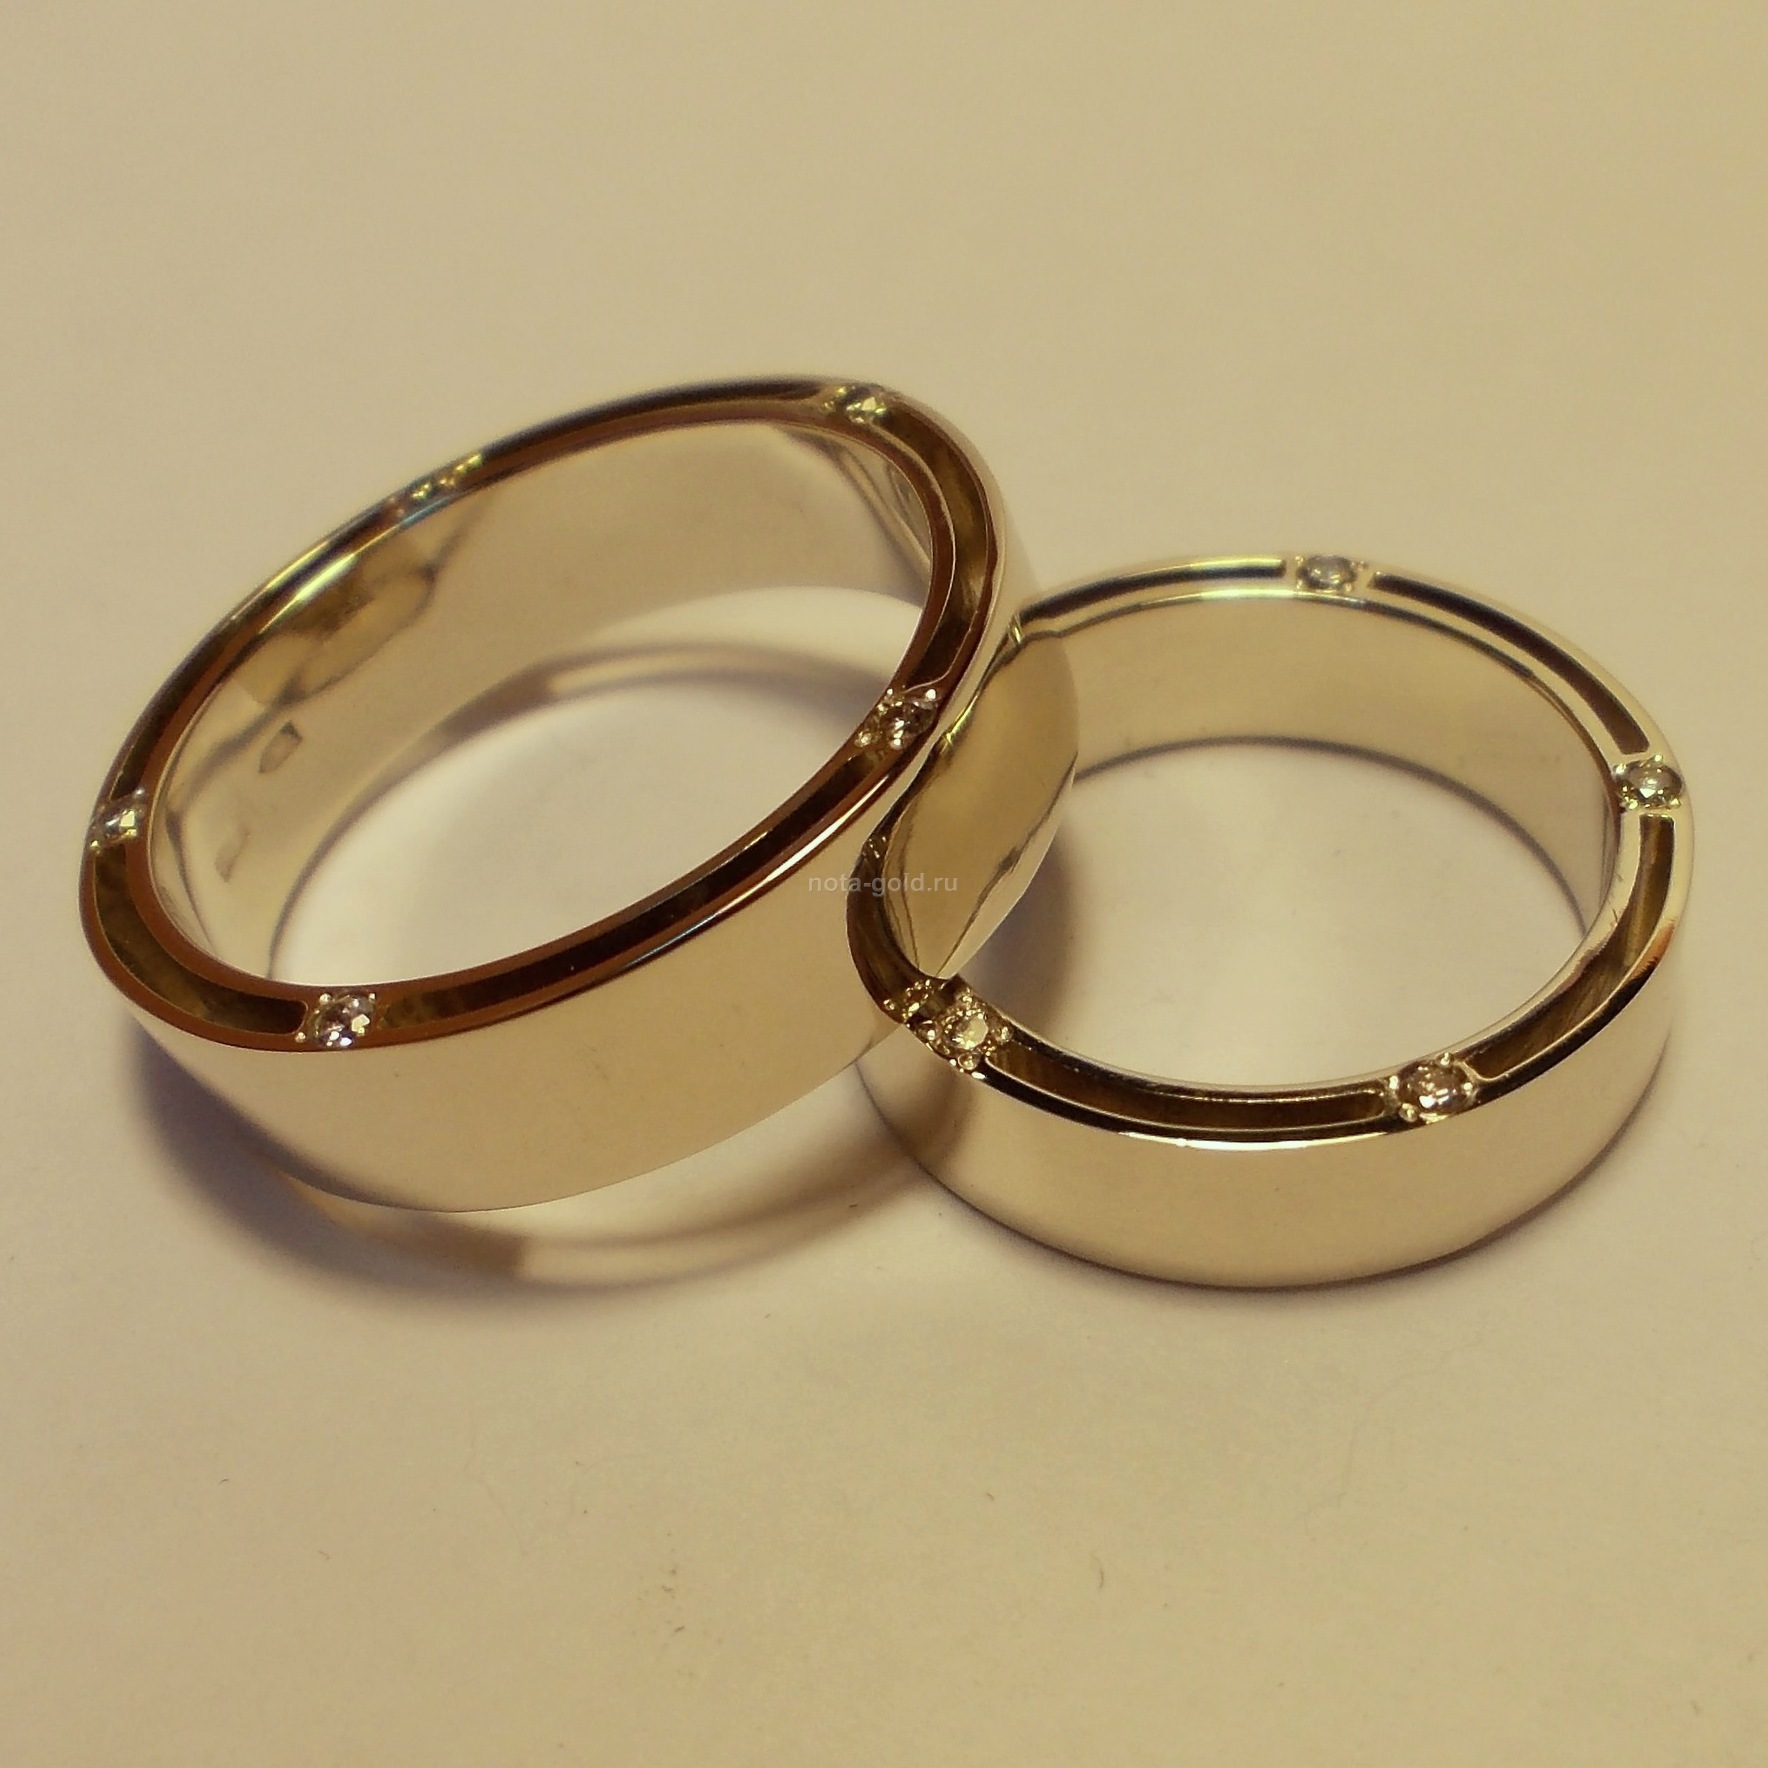 Ювелирная мастерская Nota-Gold изготовила на заказ эксклюзивные обручальные кольца.